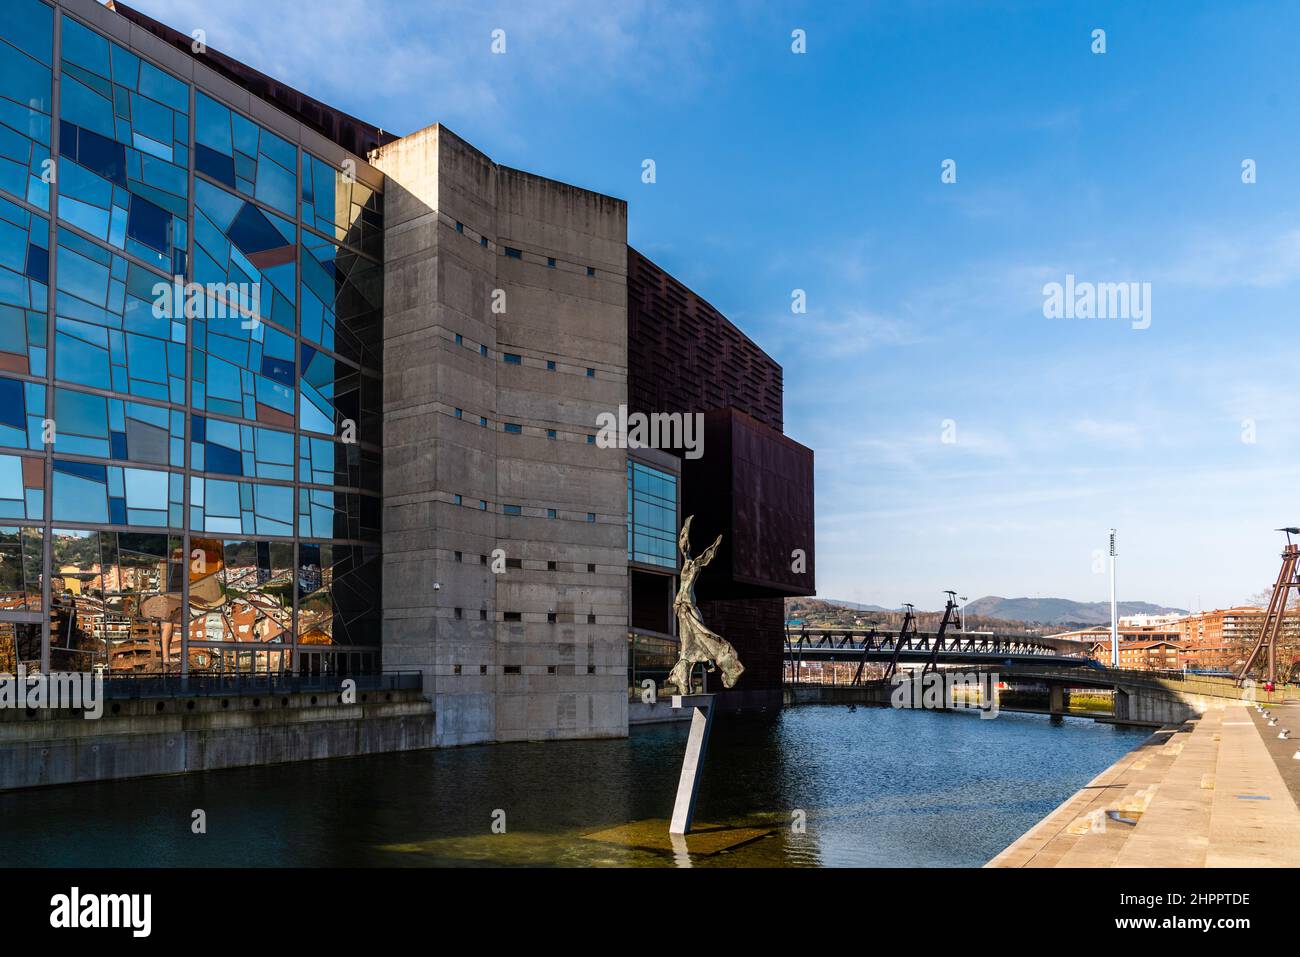 Bilbao, Spain - February 13, 2022: Exterior view of Euskalduna ...